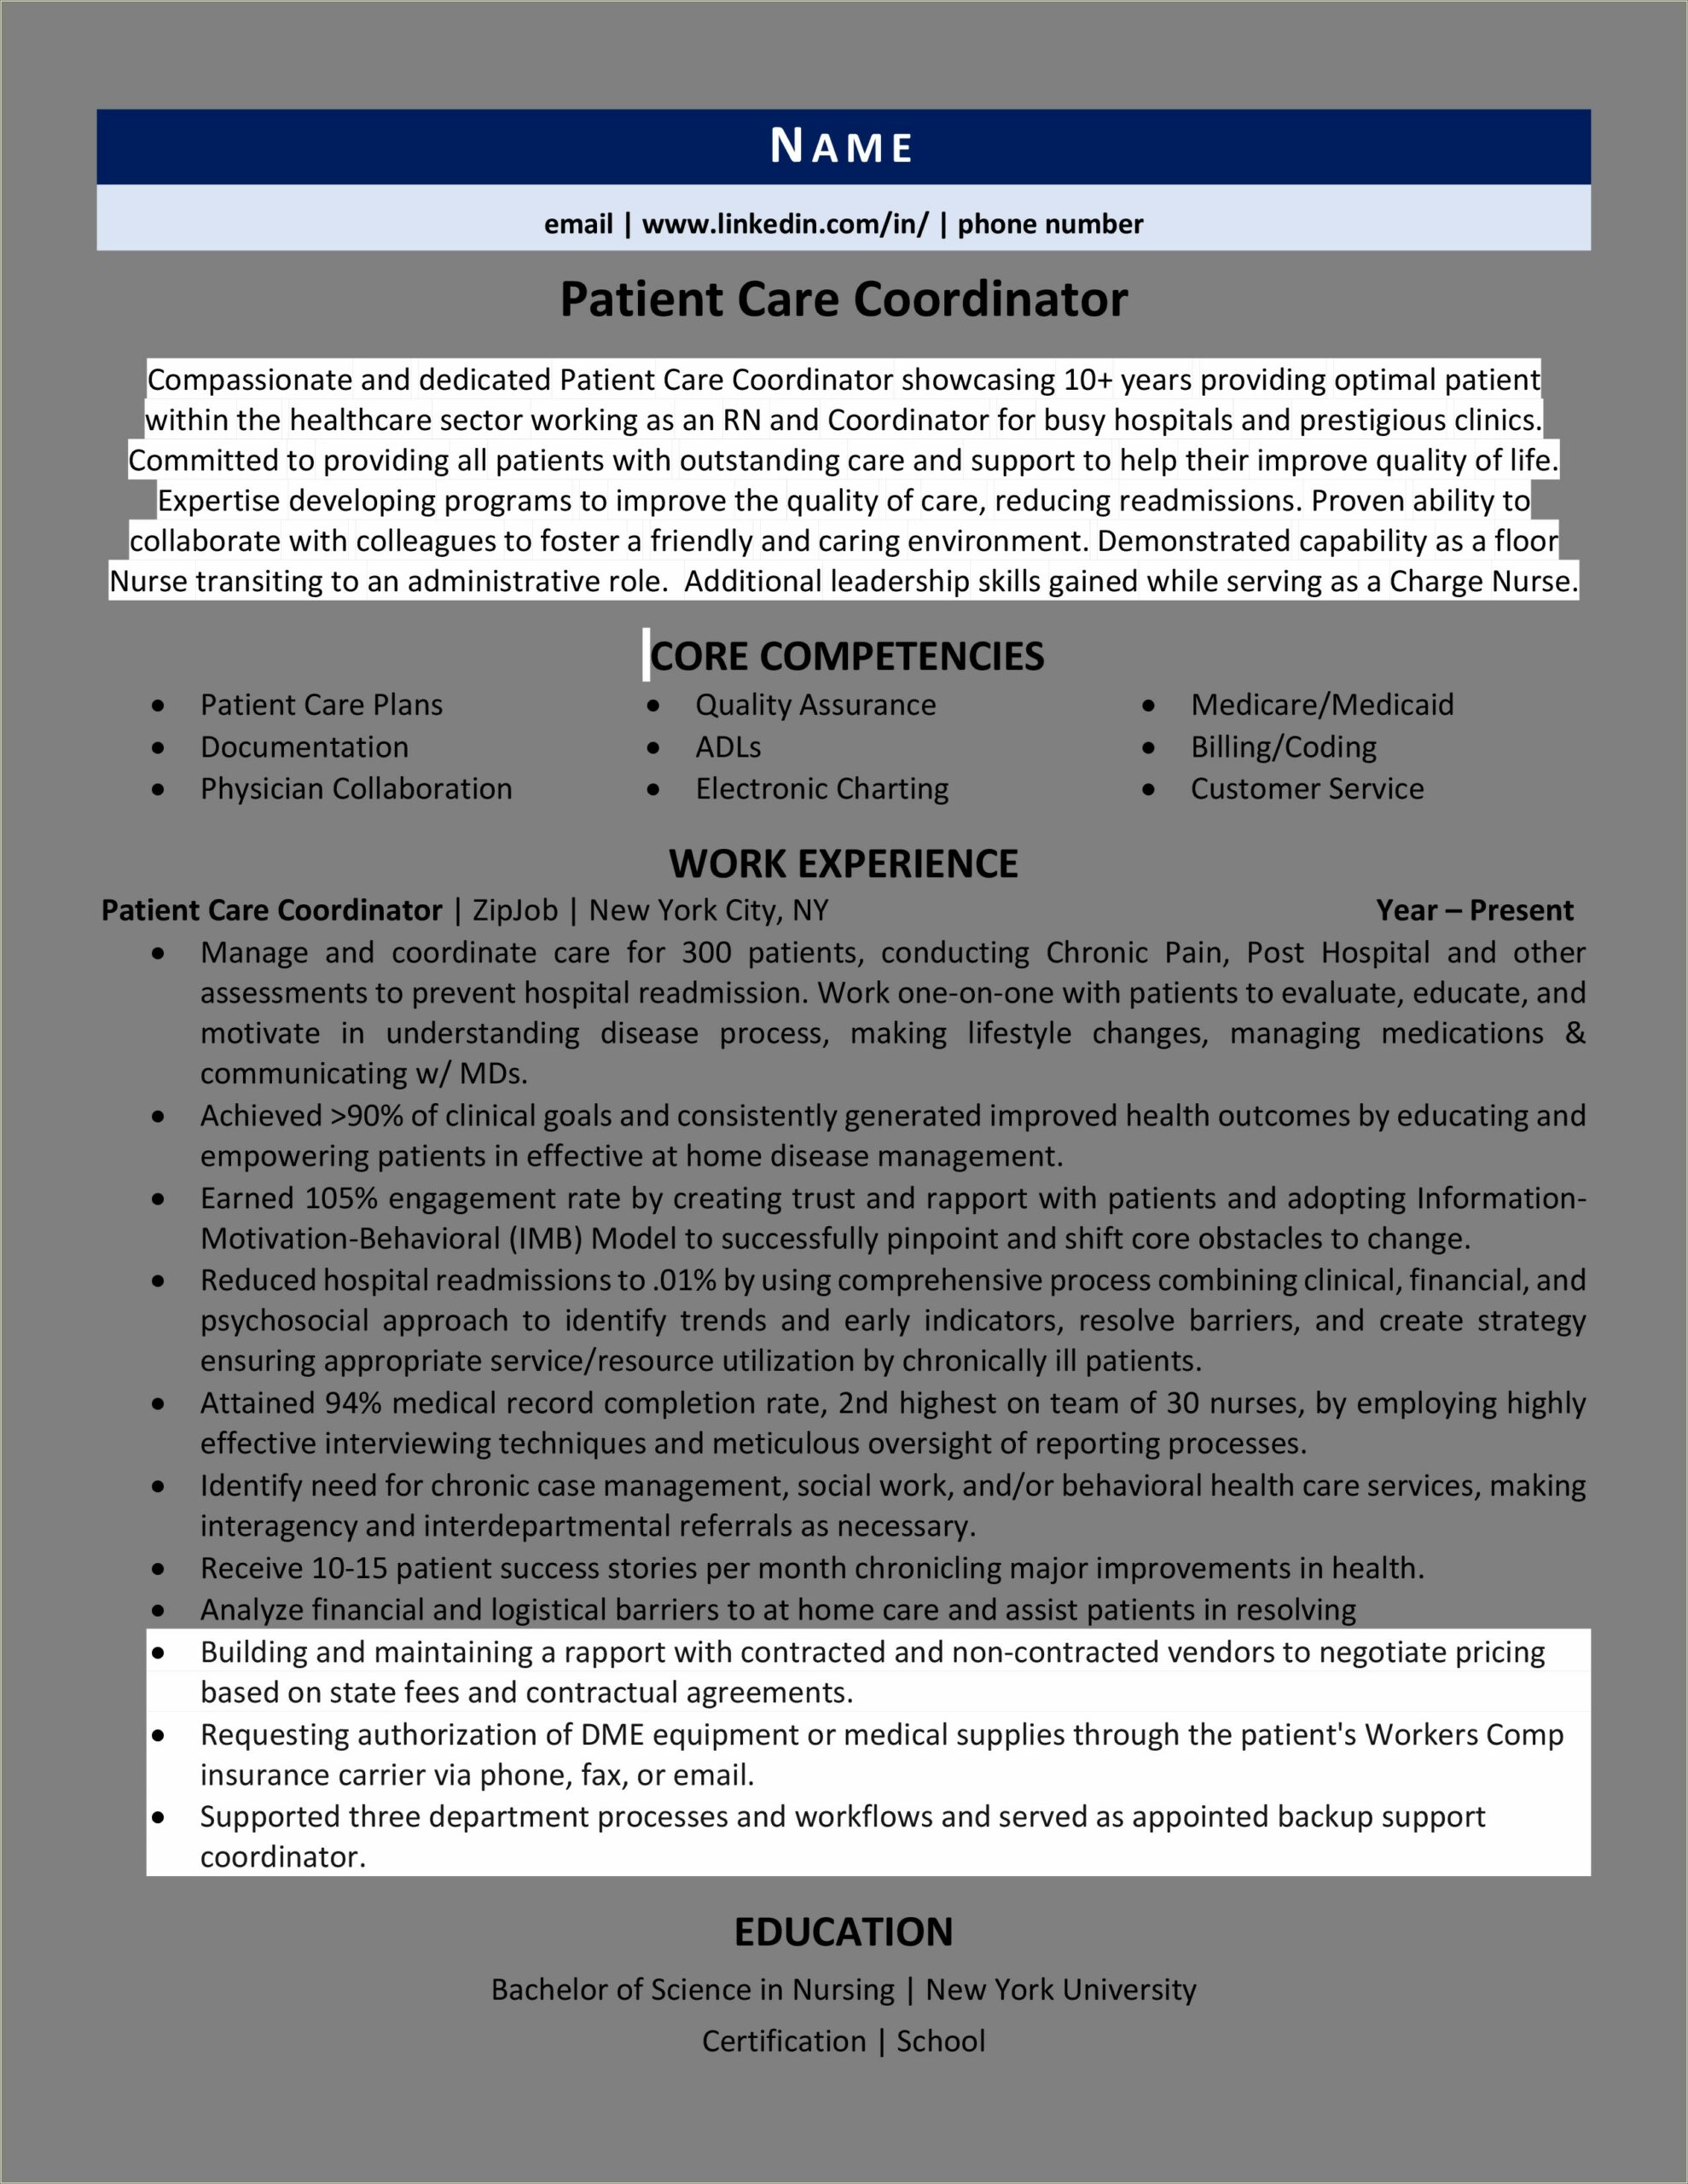 Customer Service Rep For Medicare Resume Description